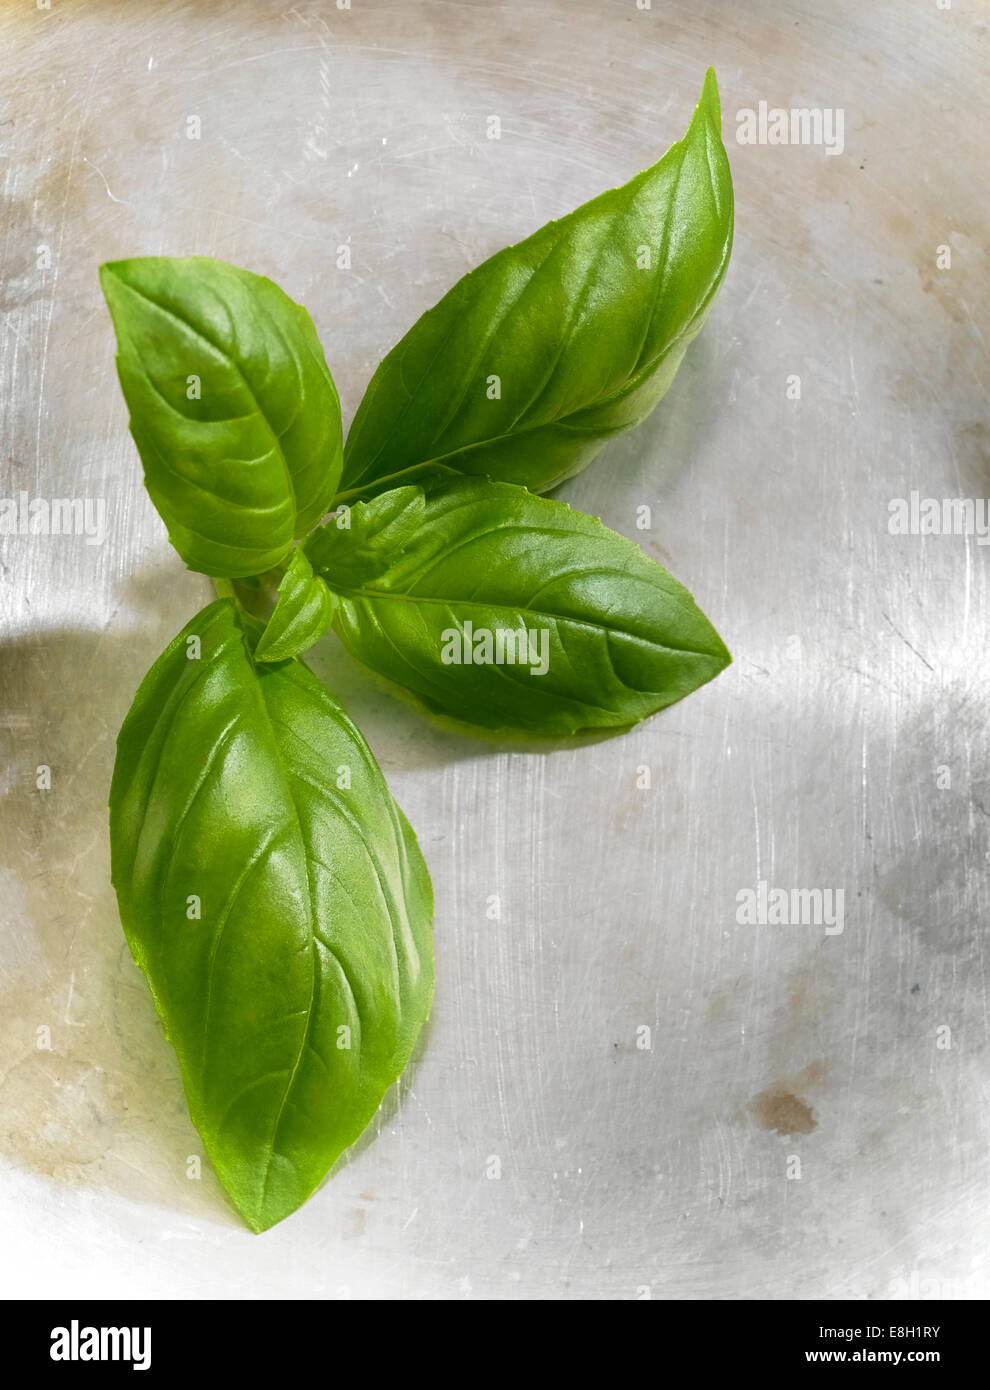 Fresco verde pick le foglie di basilico su una superficie di acciaio Foto Stock